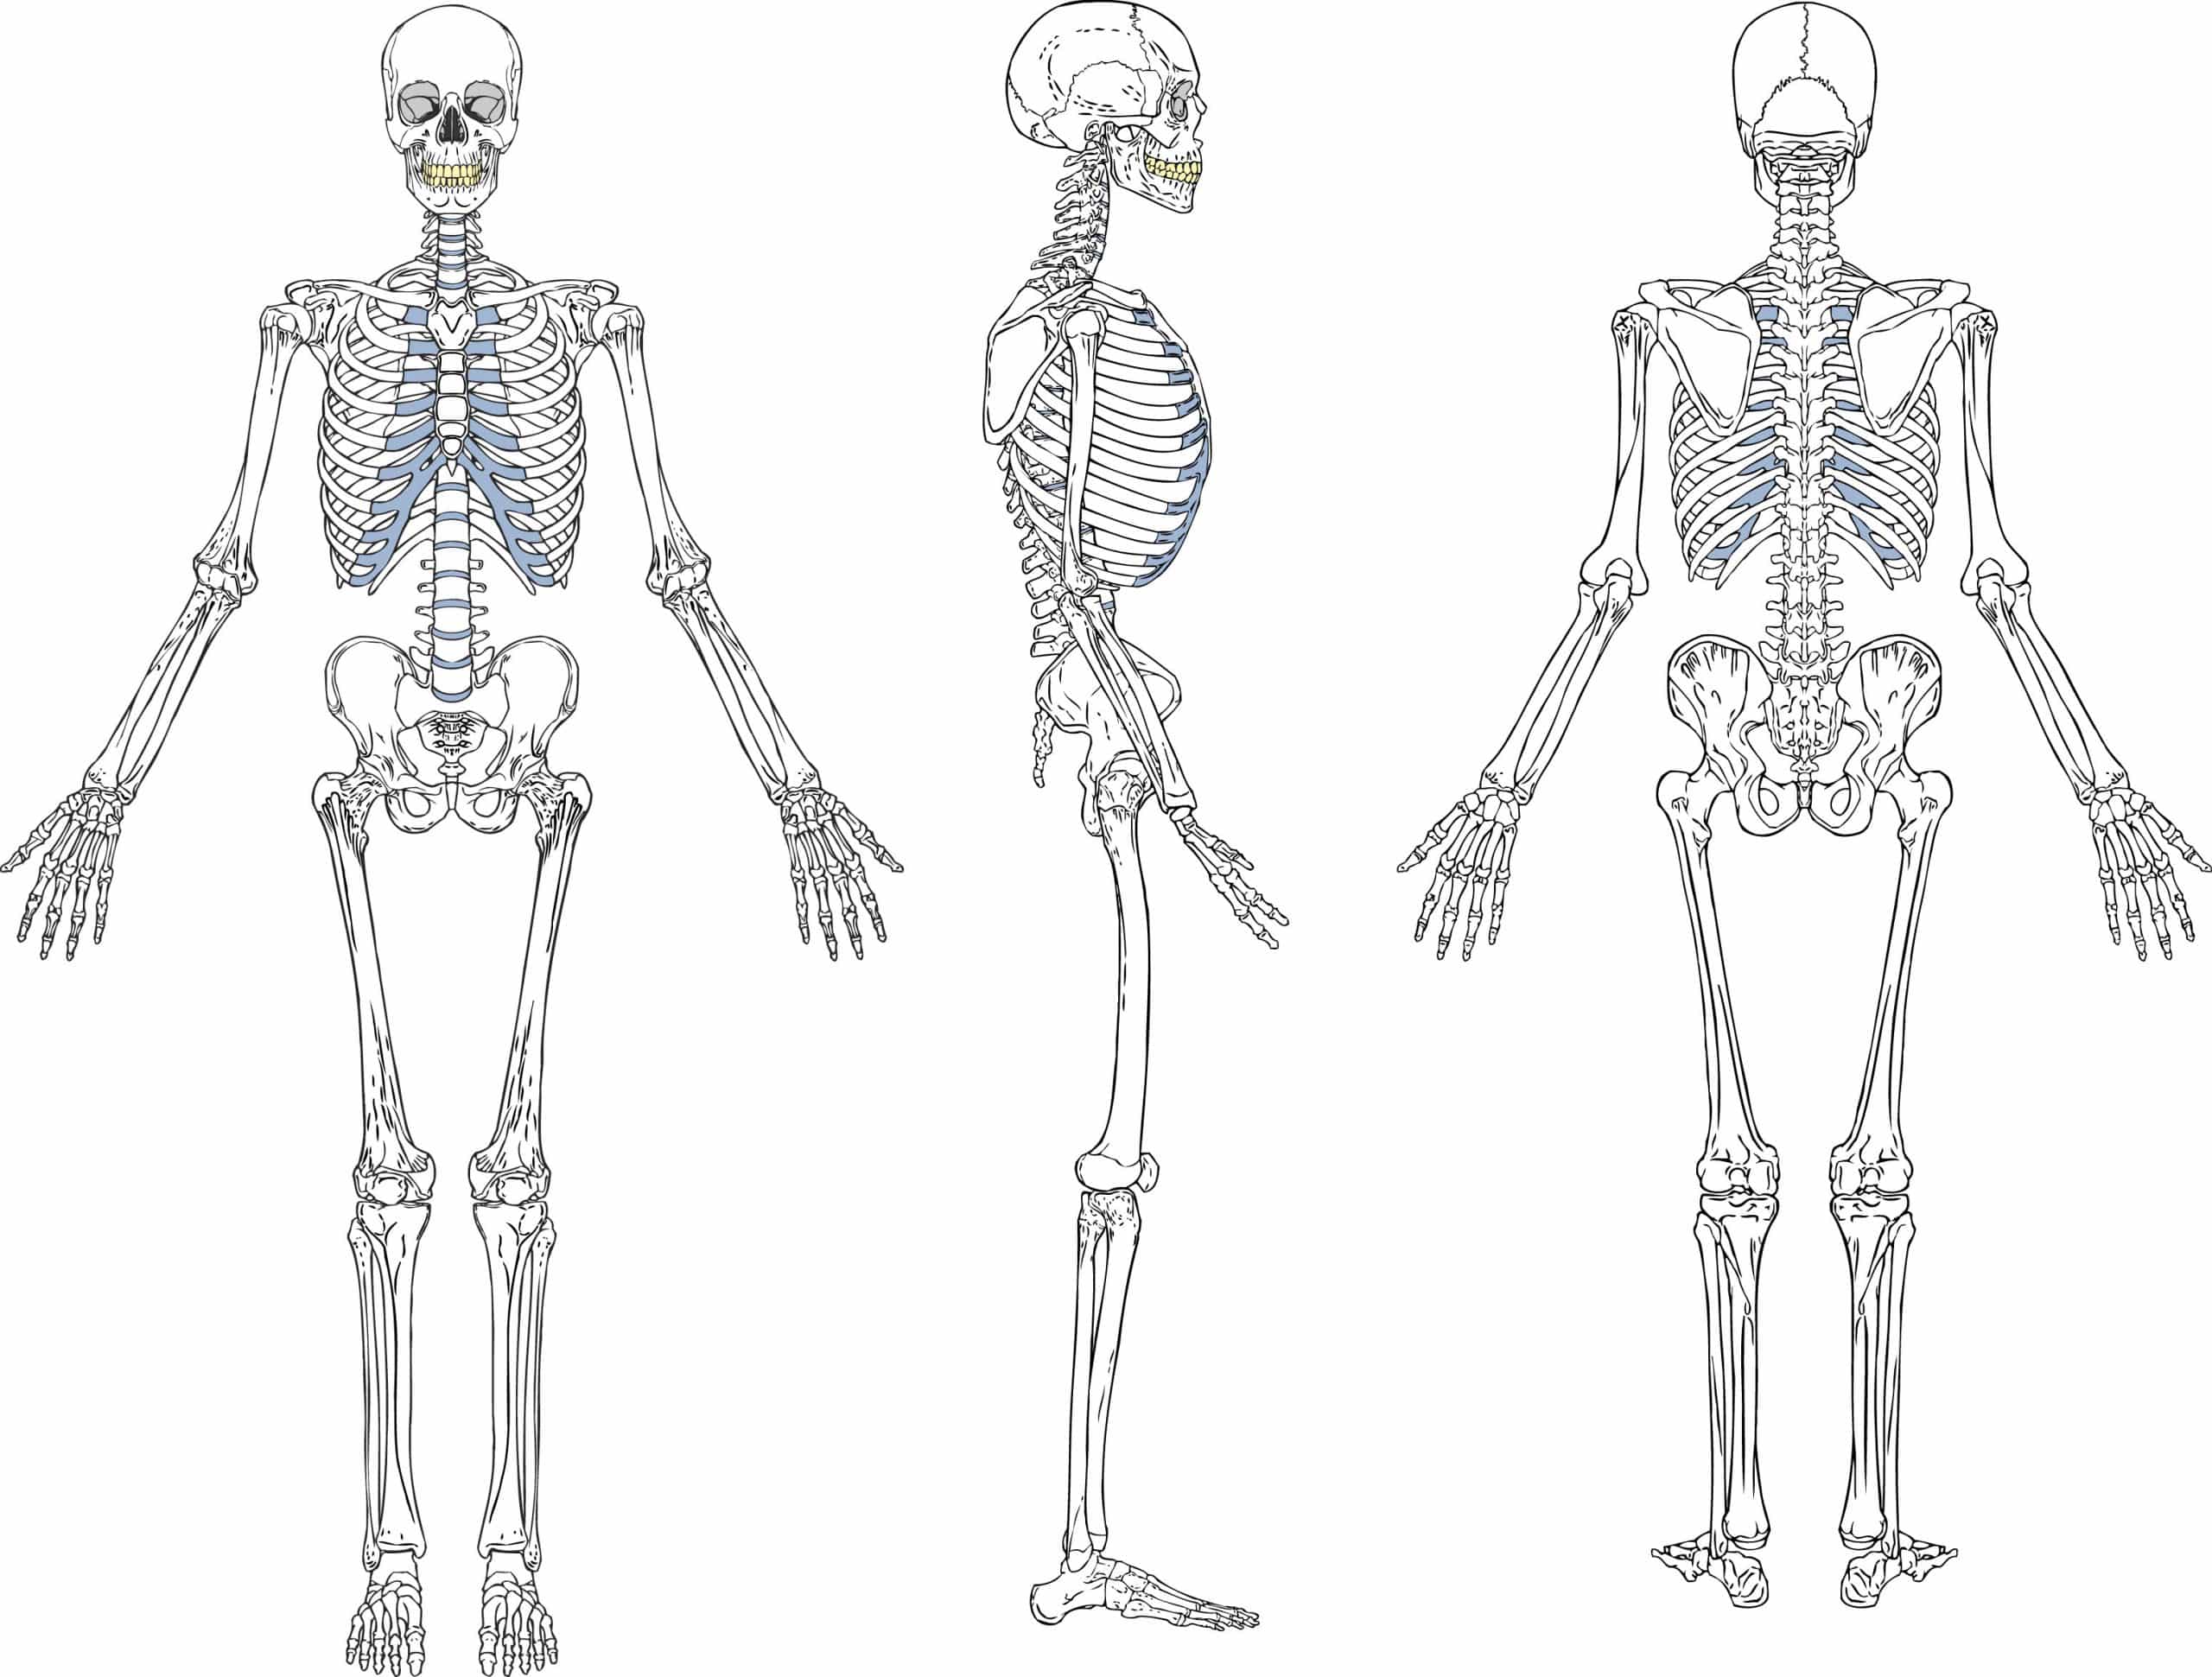 “谷歌搜索结果的解剖”的特色图像